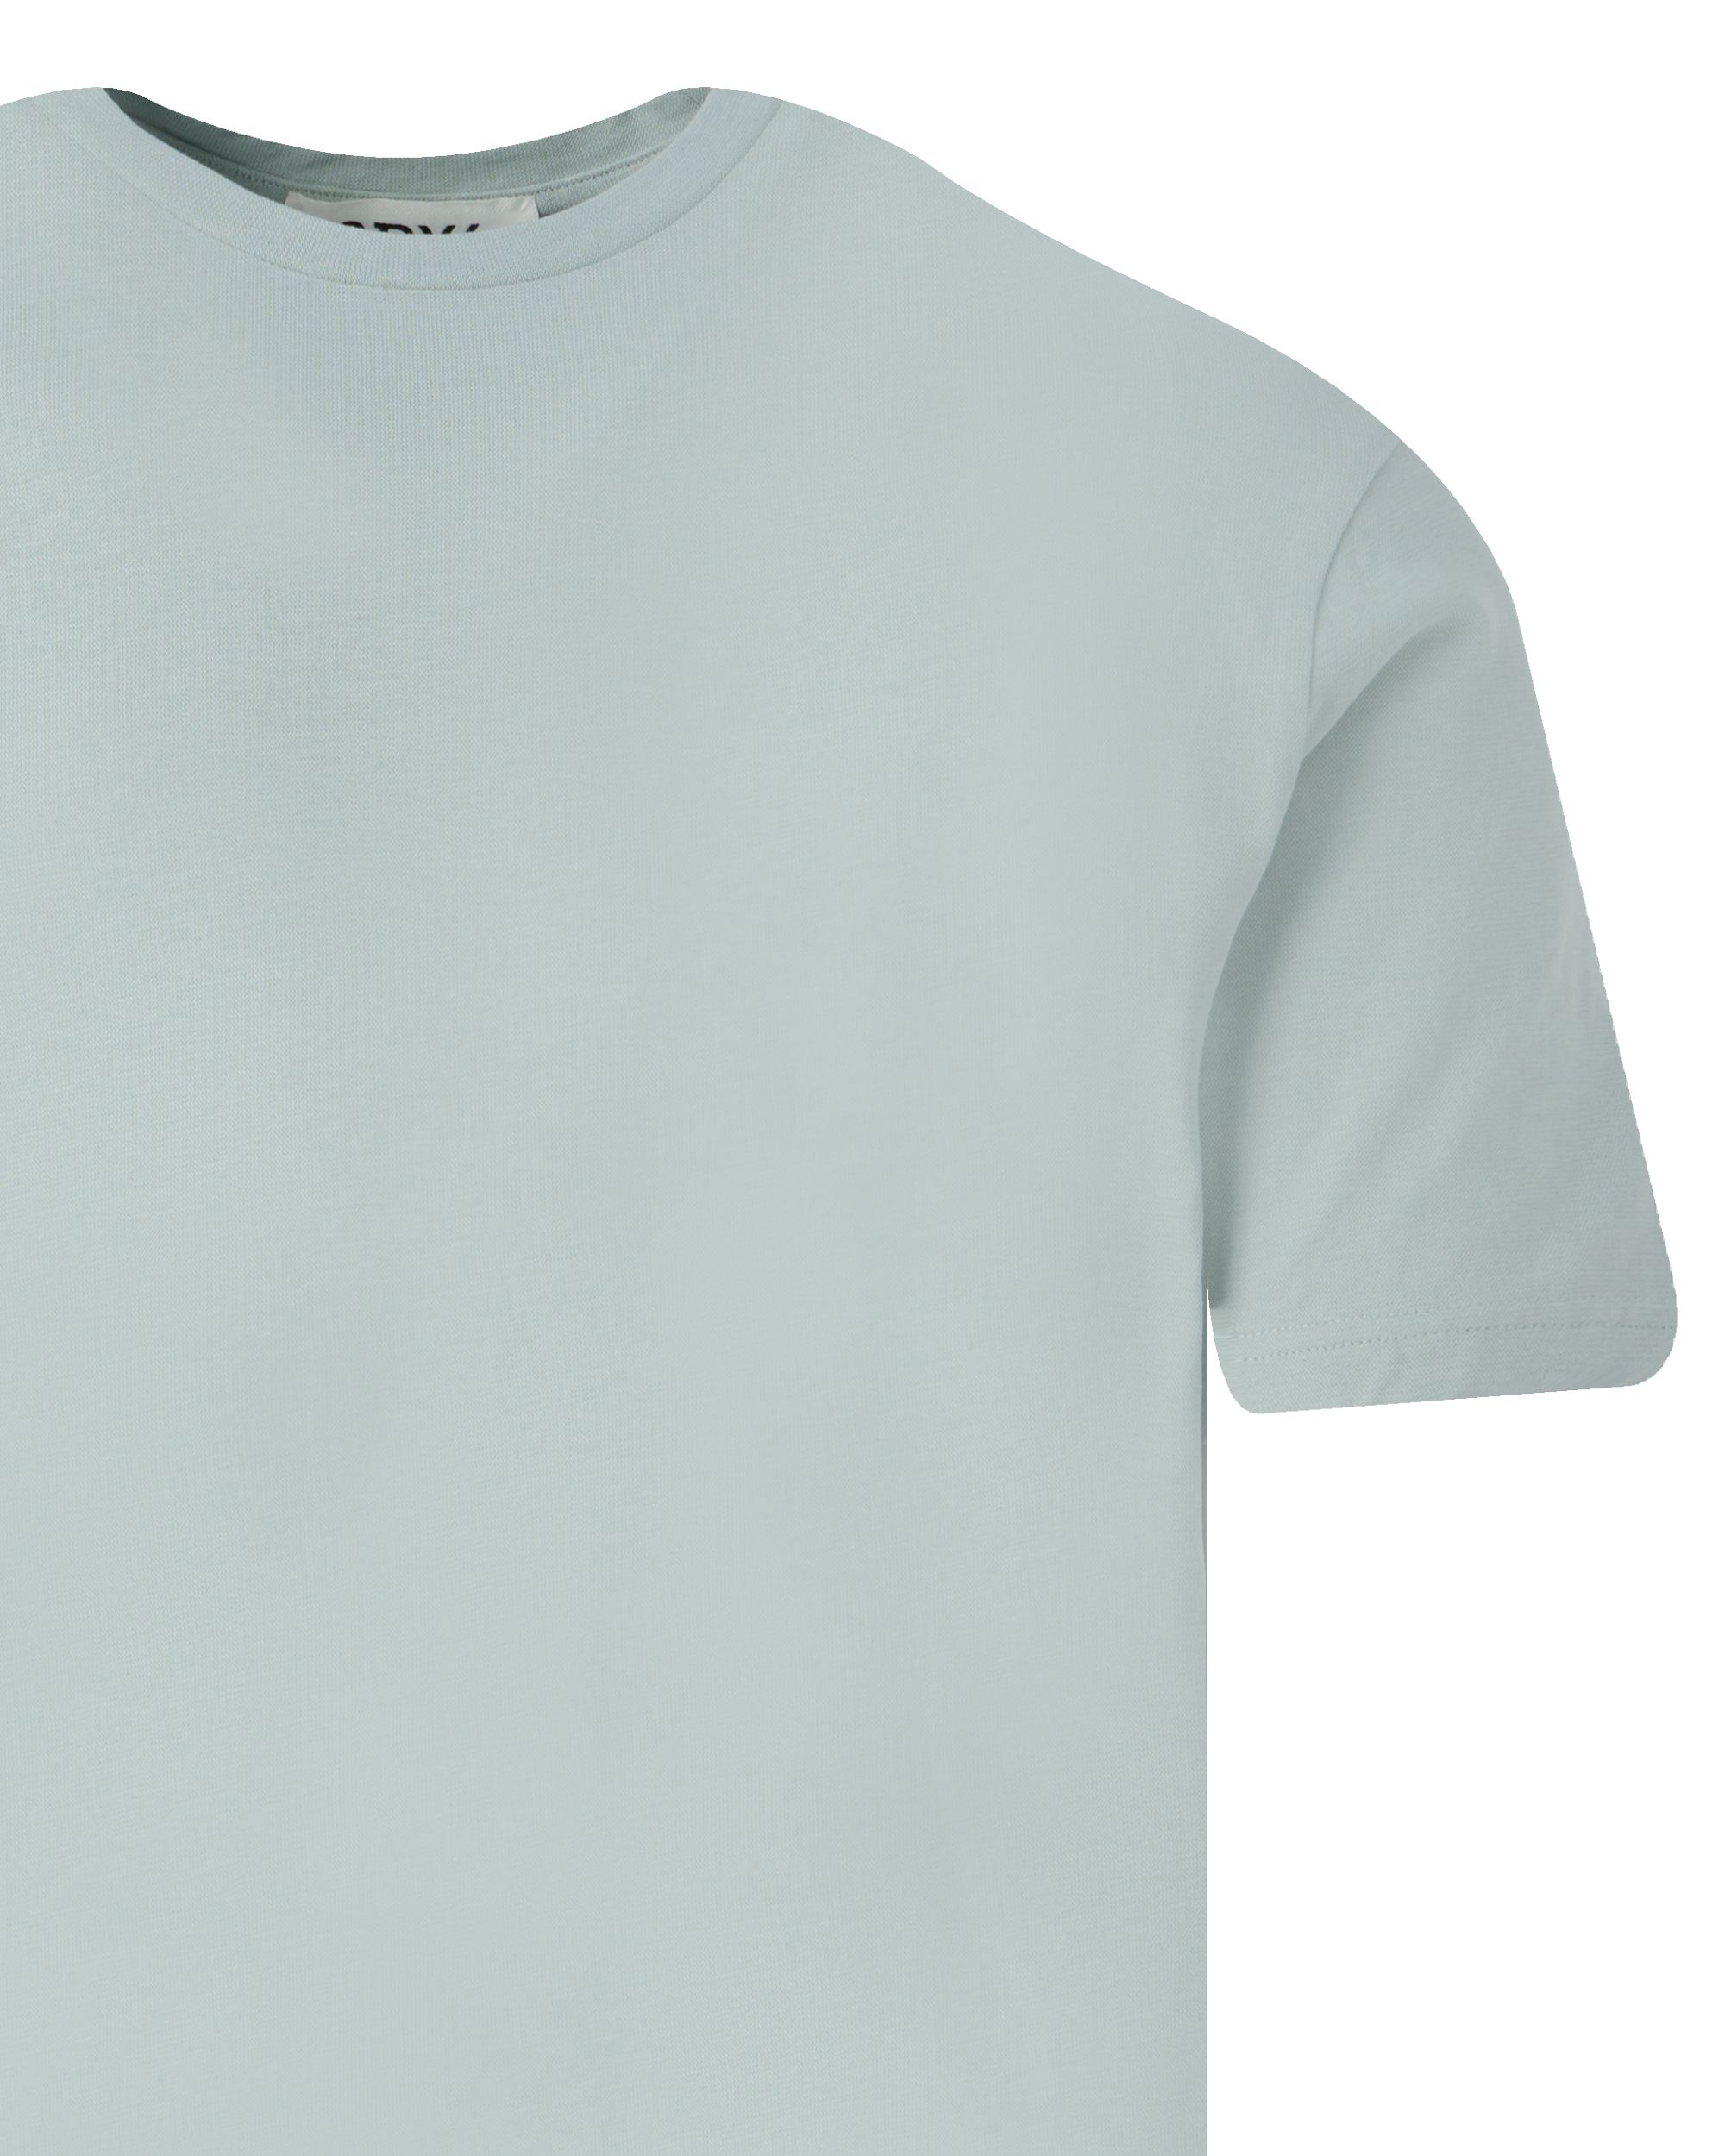 Drykorn Gilberd T-shirt KM Groen 093450-001-L